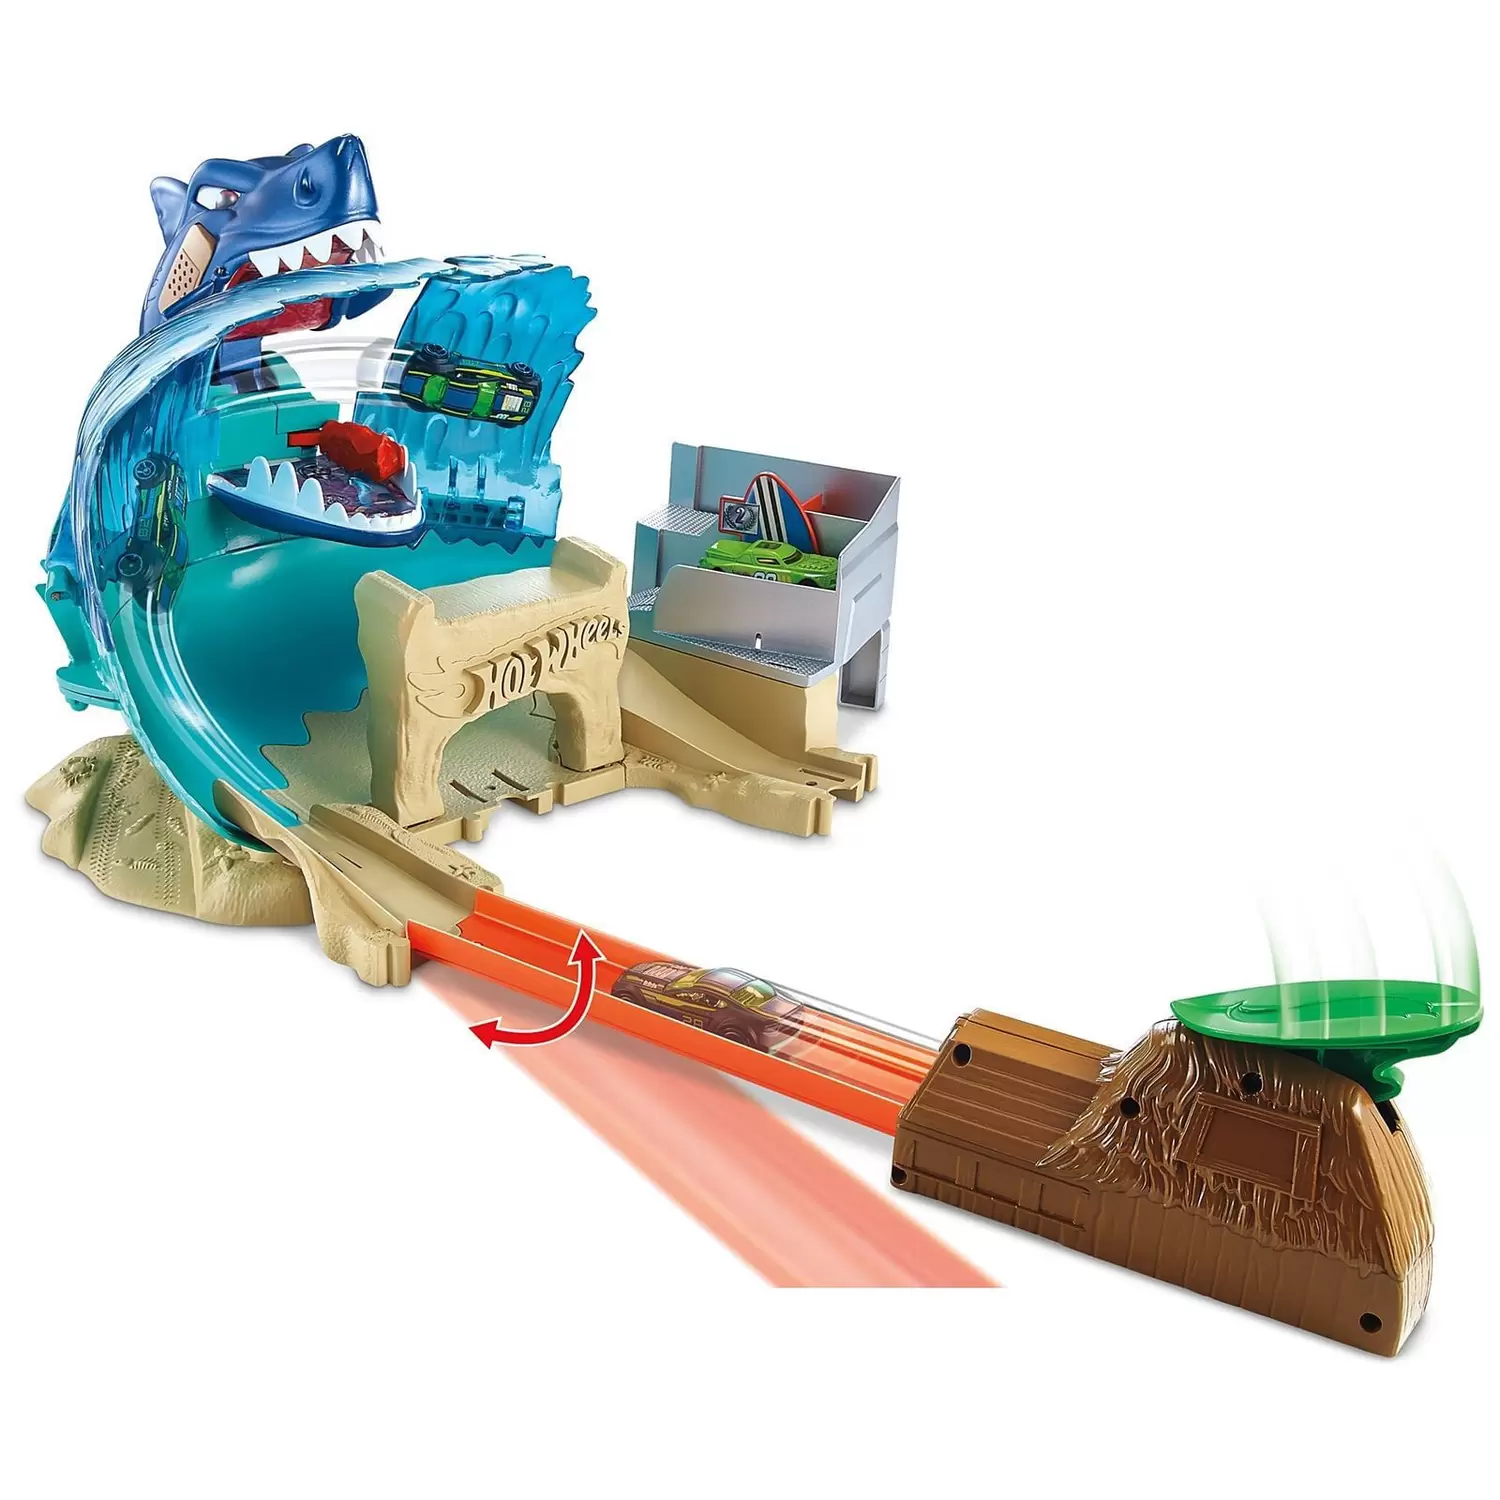 Pista Hot Wheels - City - Ataque Tubarão - Mattel - Mercadao do Real